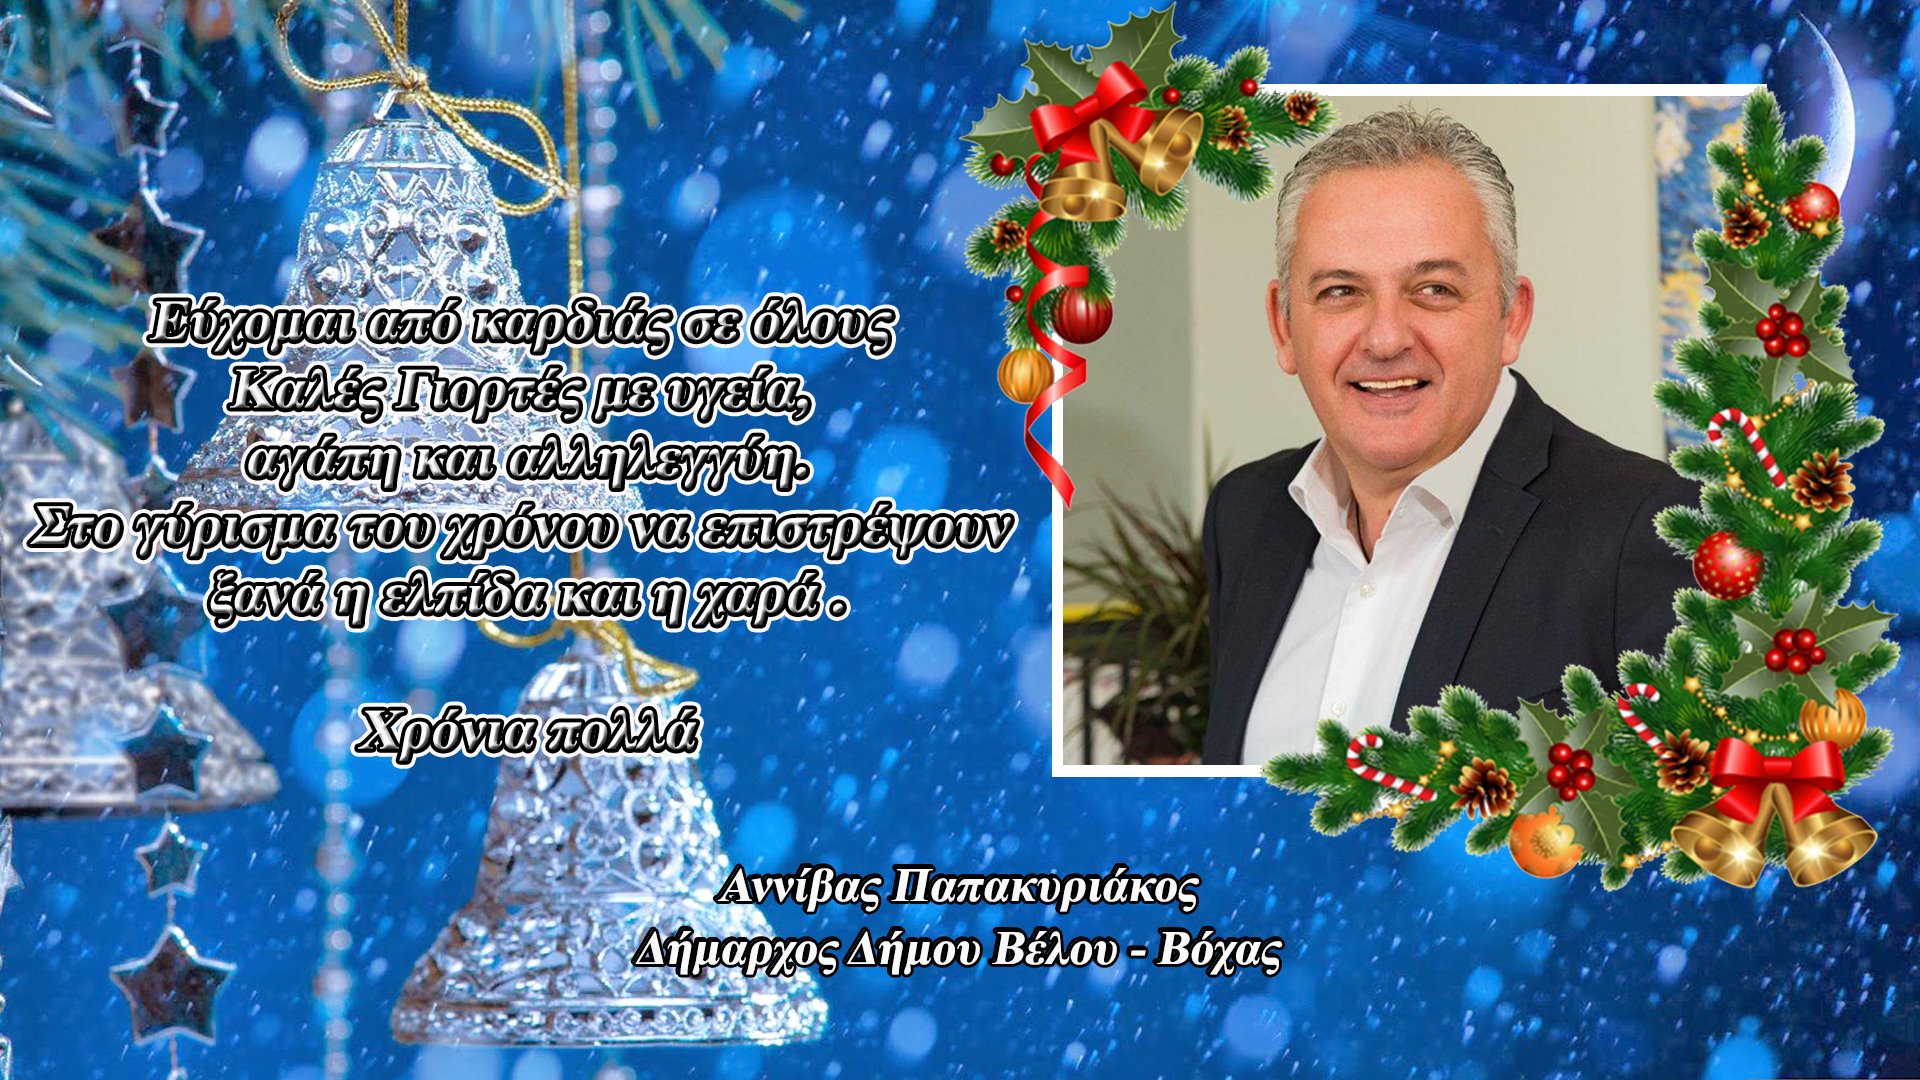 Ο Δήμαρχος Δήμου Βέλου-Βόχας Αννίβας Παπακυριάκος μας εύχεται καλές γιορτές με υγεία - ΚΟΡΙΝΘΙΑ